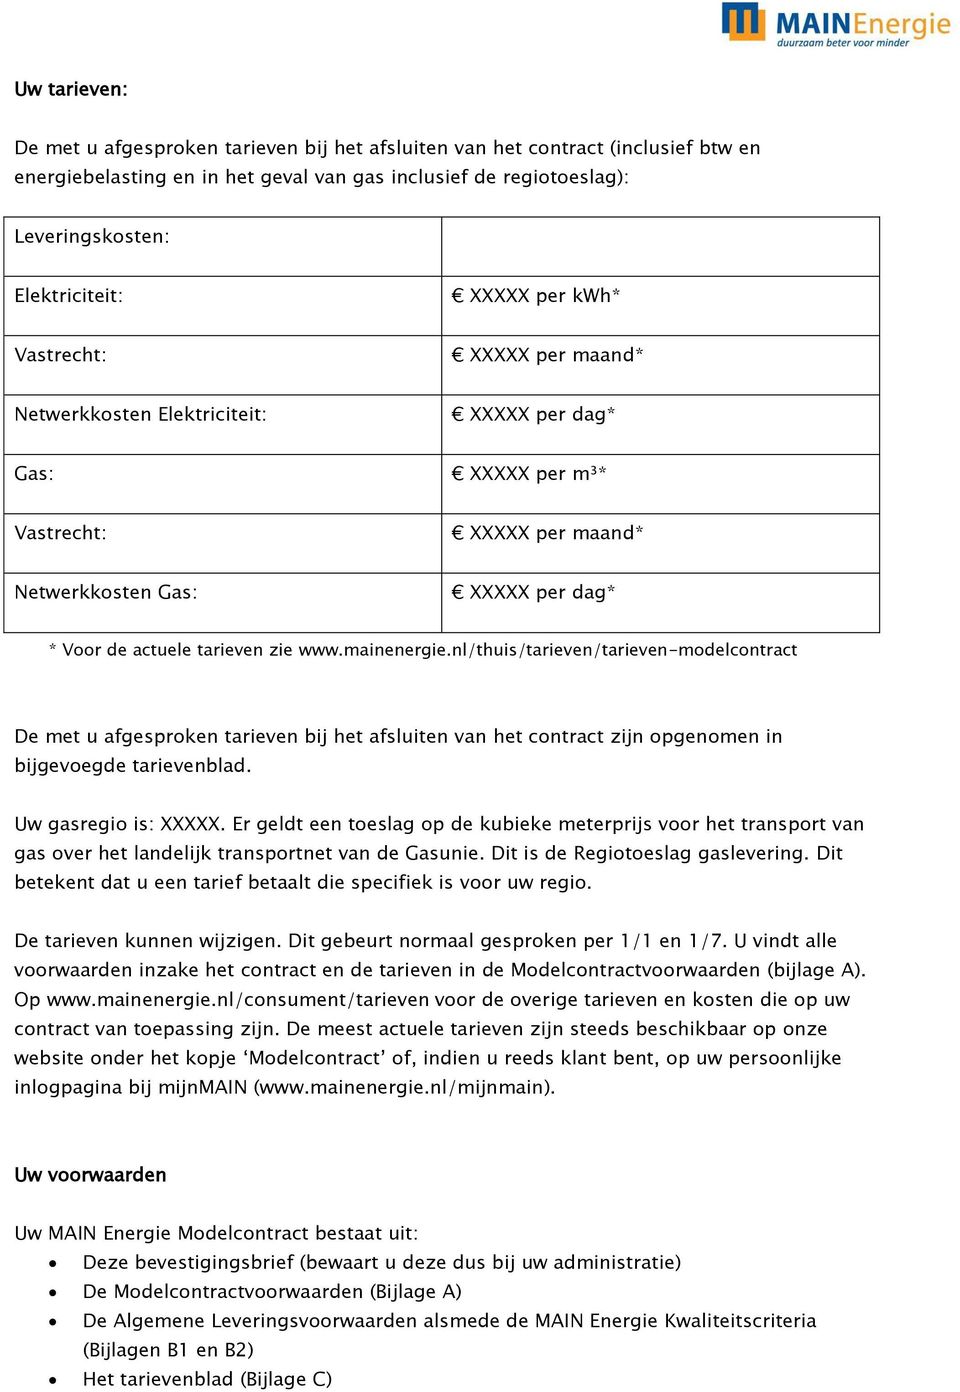 www.mainenergie.nl/thuis/tarieven/tarieven-modelcontract De met u afgesproken tarieven bij het afsluiten van het contract zijn opgenomen in bijgevoegde tarievenblad. Uw gasregio is: XXXXX.